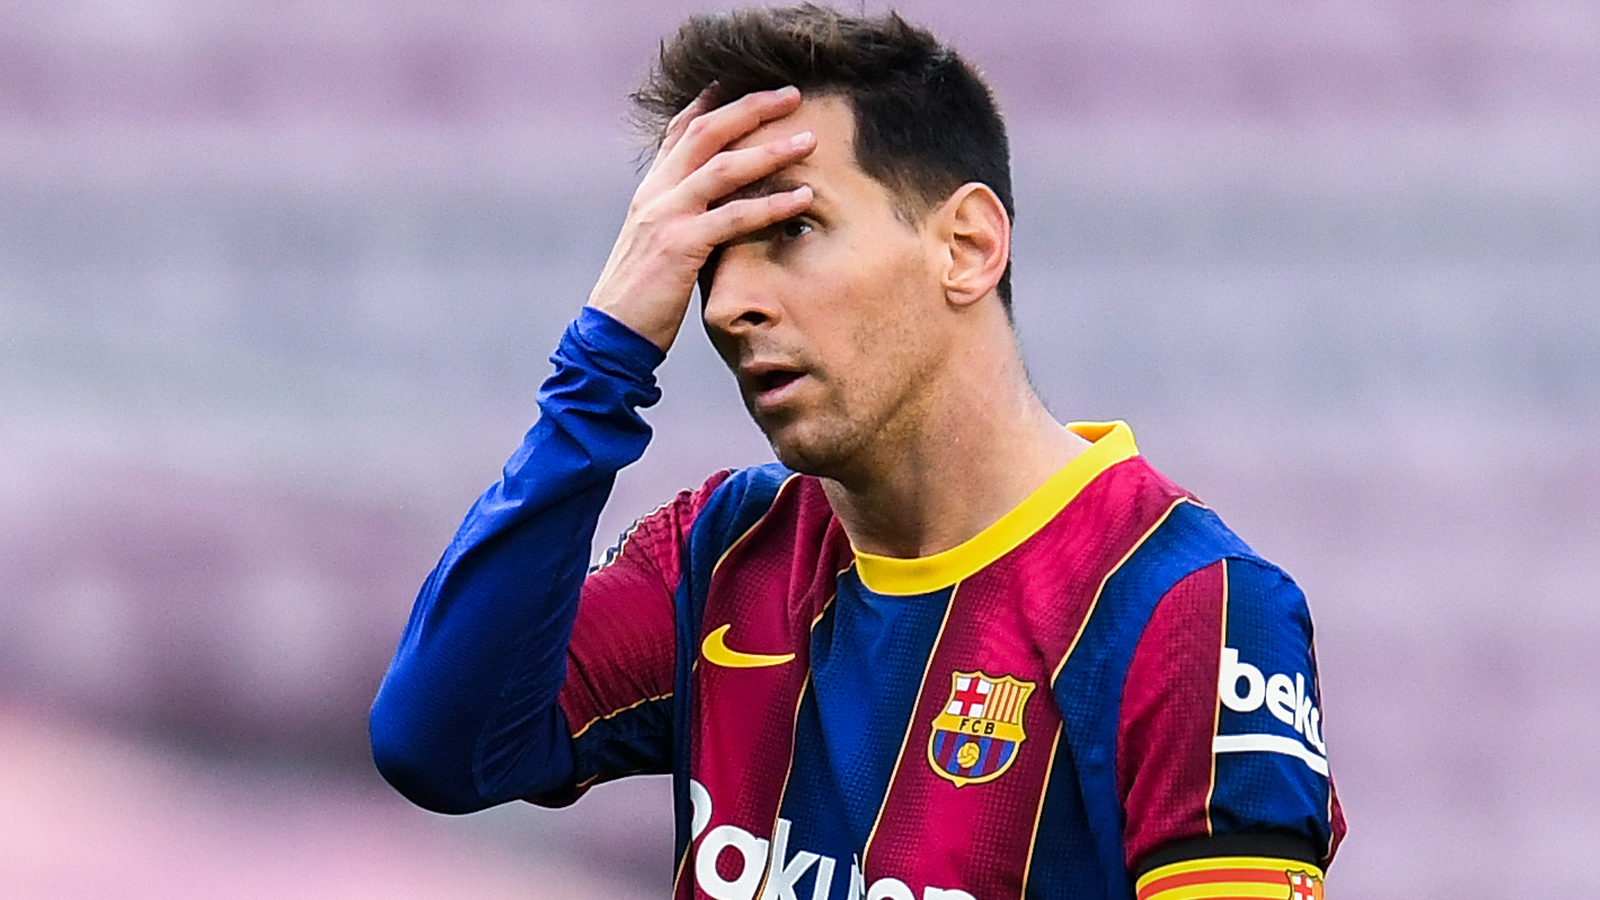 Enthüllt So Lief Das Drama Aus Von Messi Sport24at 